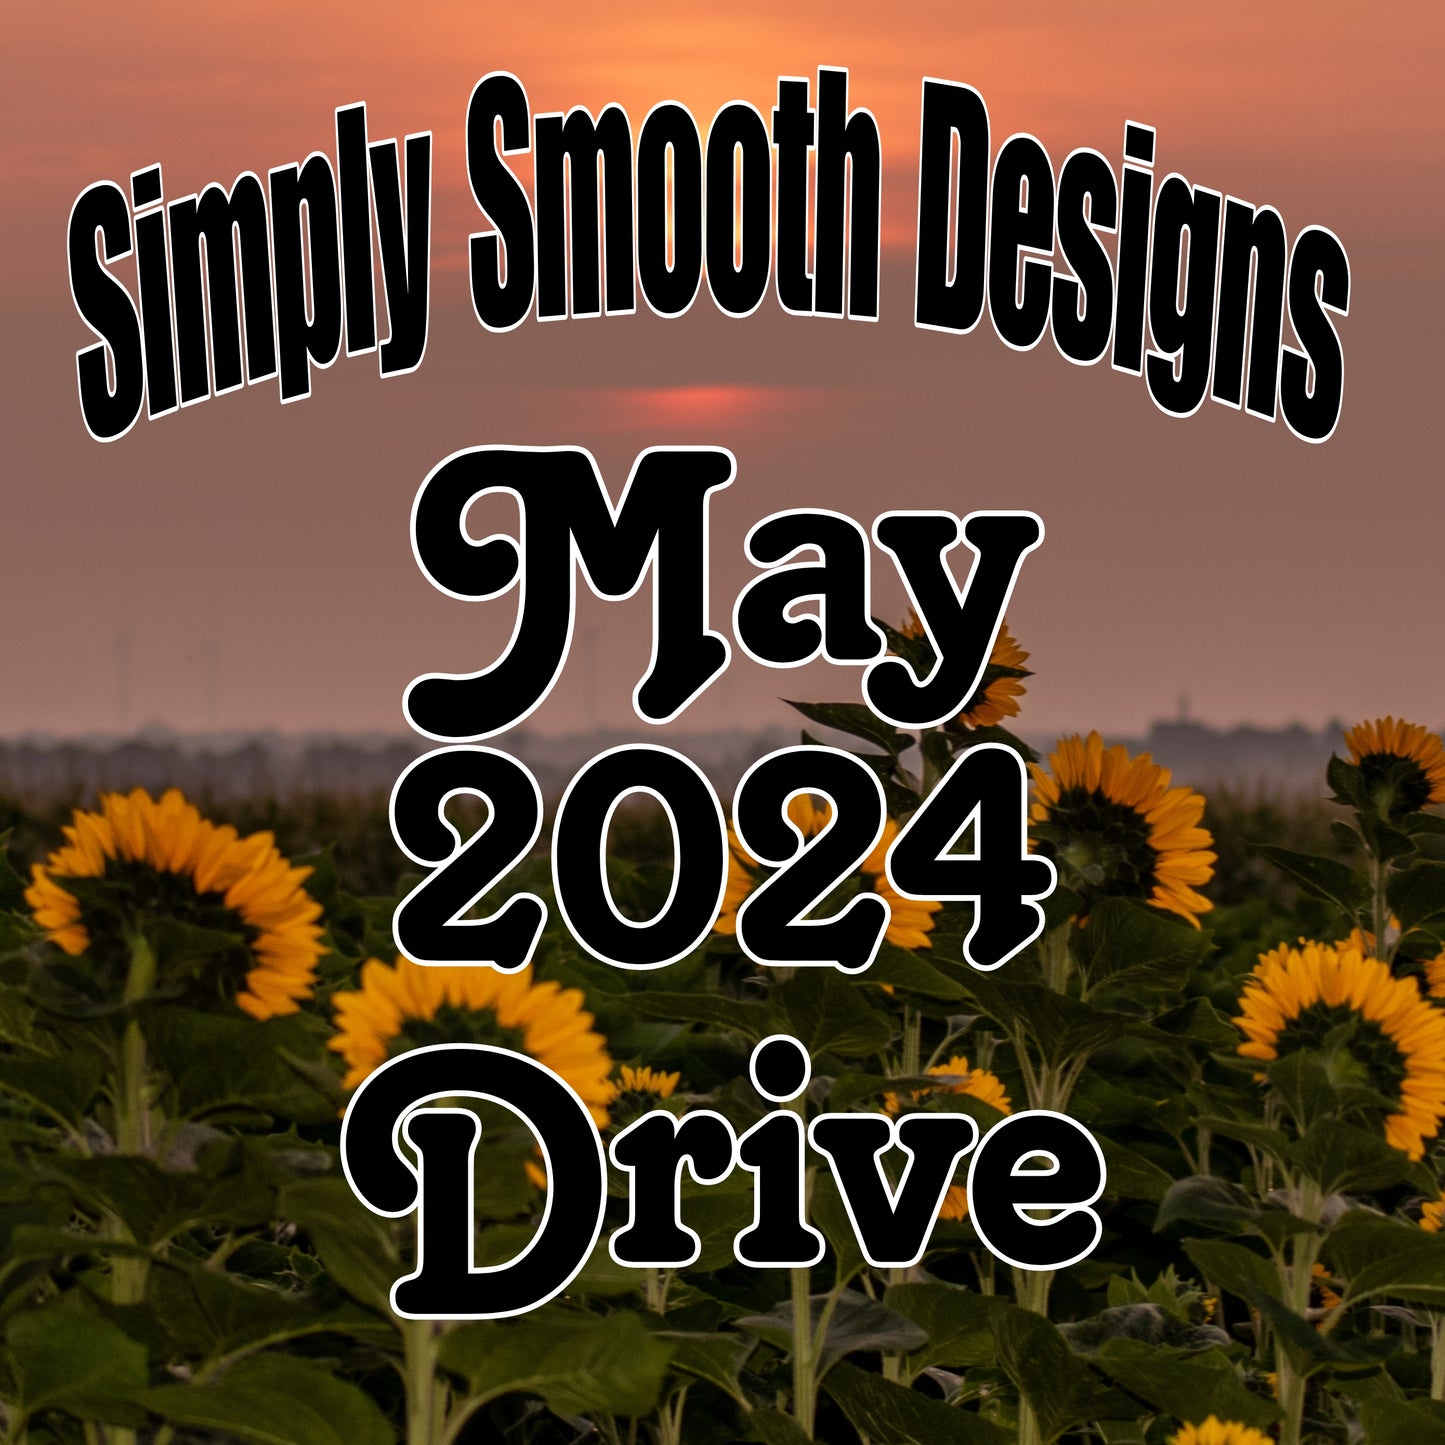 May 2024 Drive